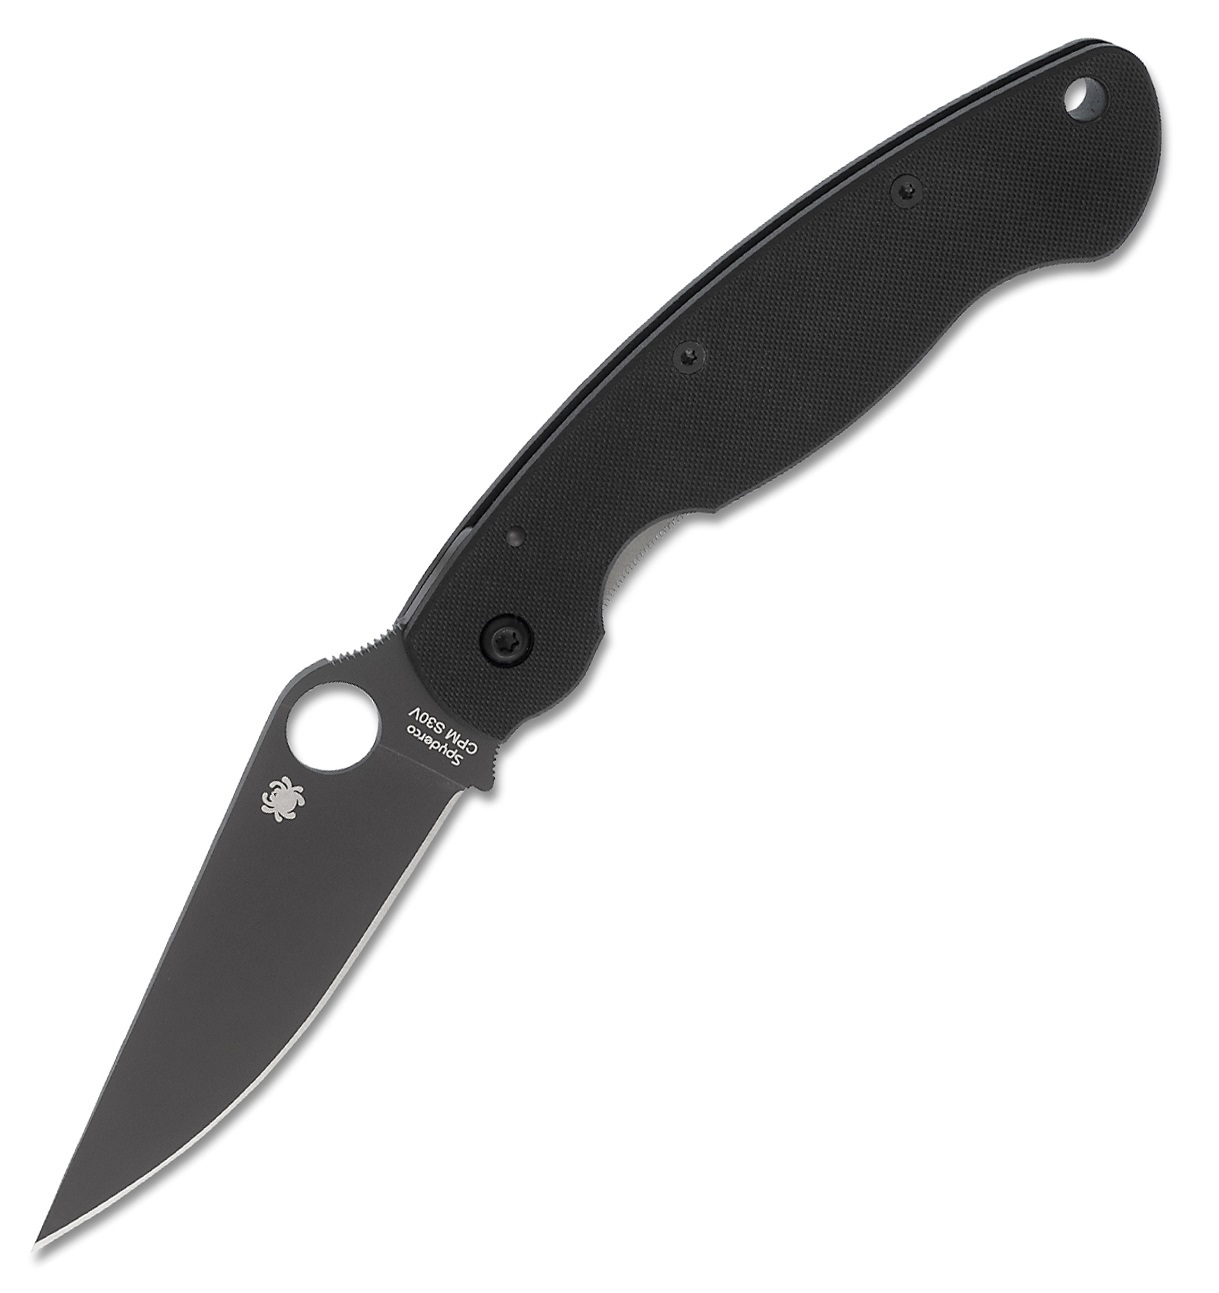 Нож складной Military™ Model - Spyderco C36GPBK, сталь Crucible CPM® S30V™ Black DLC coated Plain, рукоять стеклотекстолит G10, чёрный